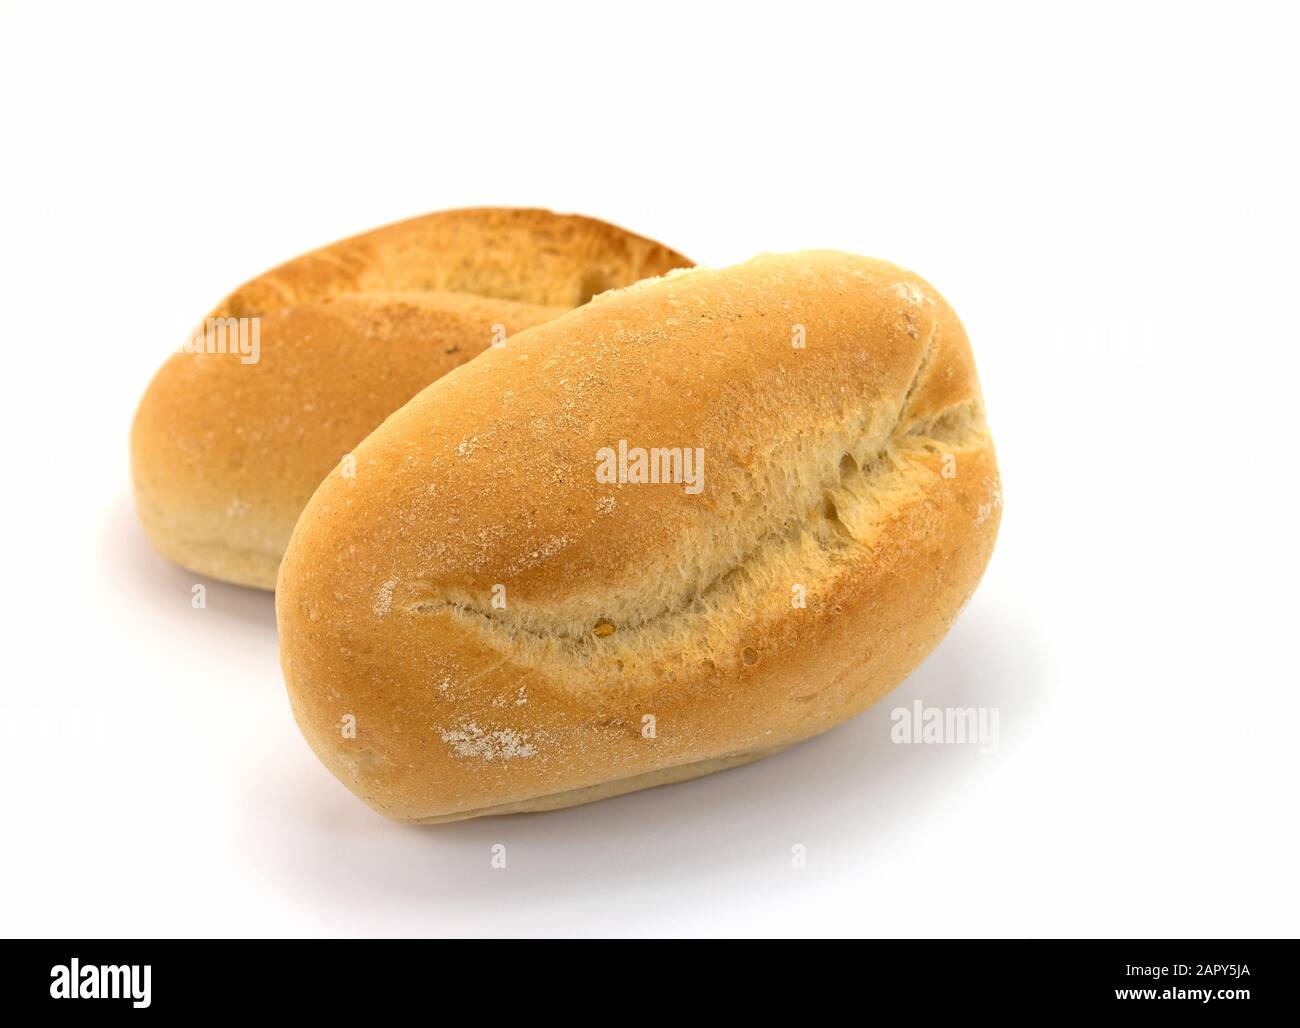 Wheat bun against white background Stock Photo